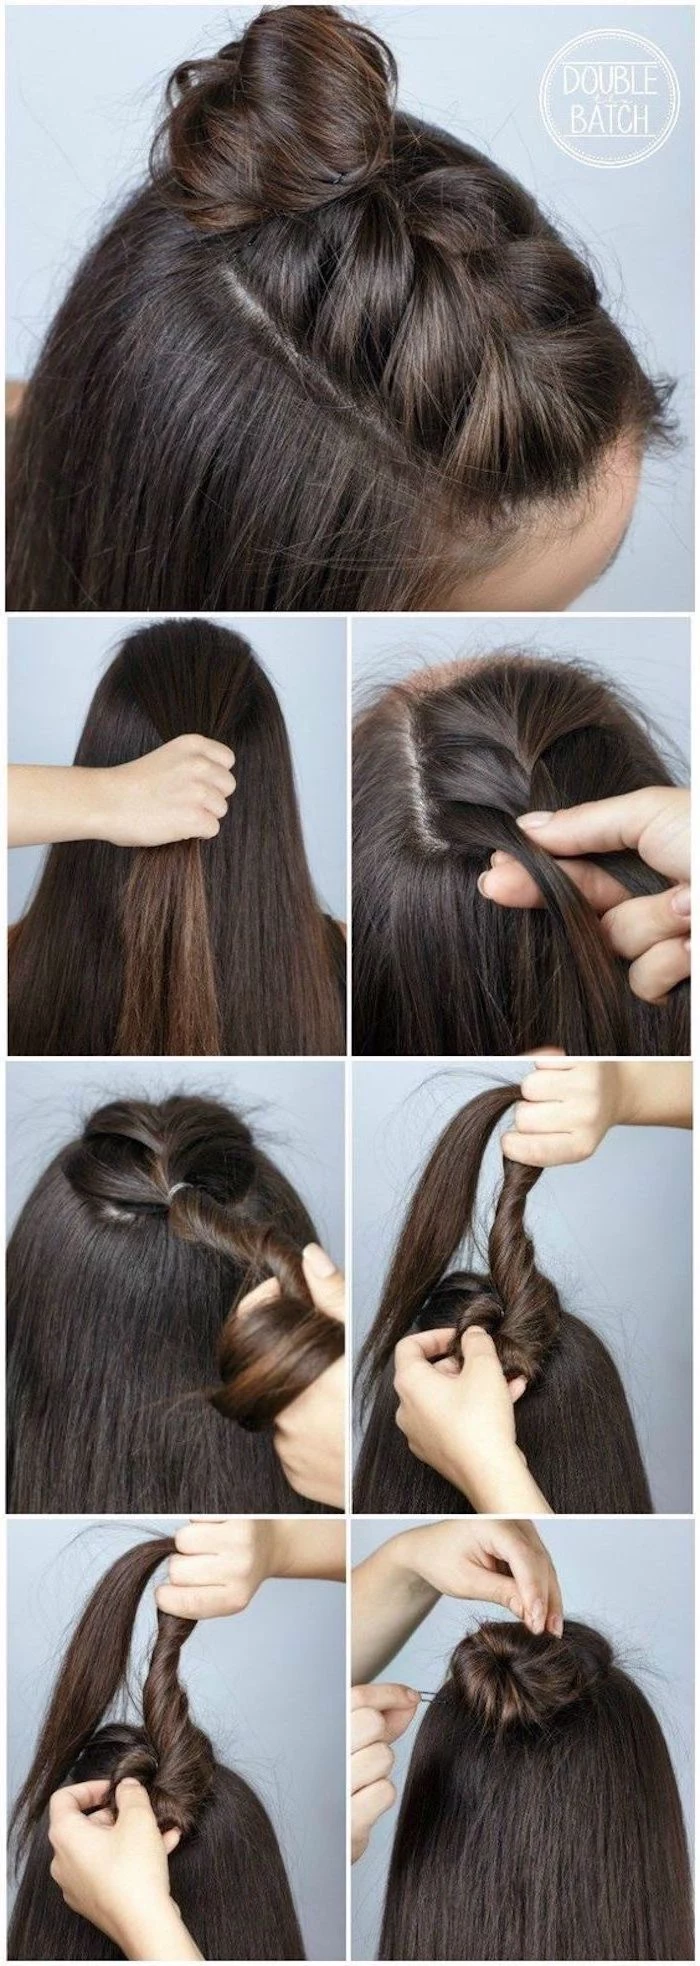 brunette hair with braid on top ending in bun hairstyles for teenage girls step by step diy tutorial